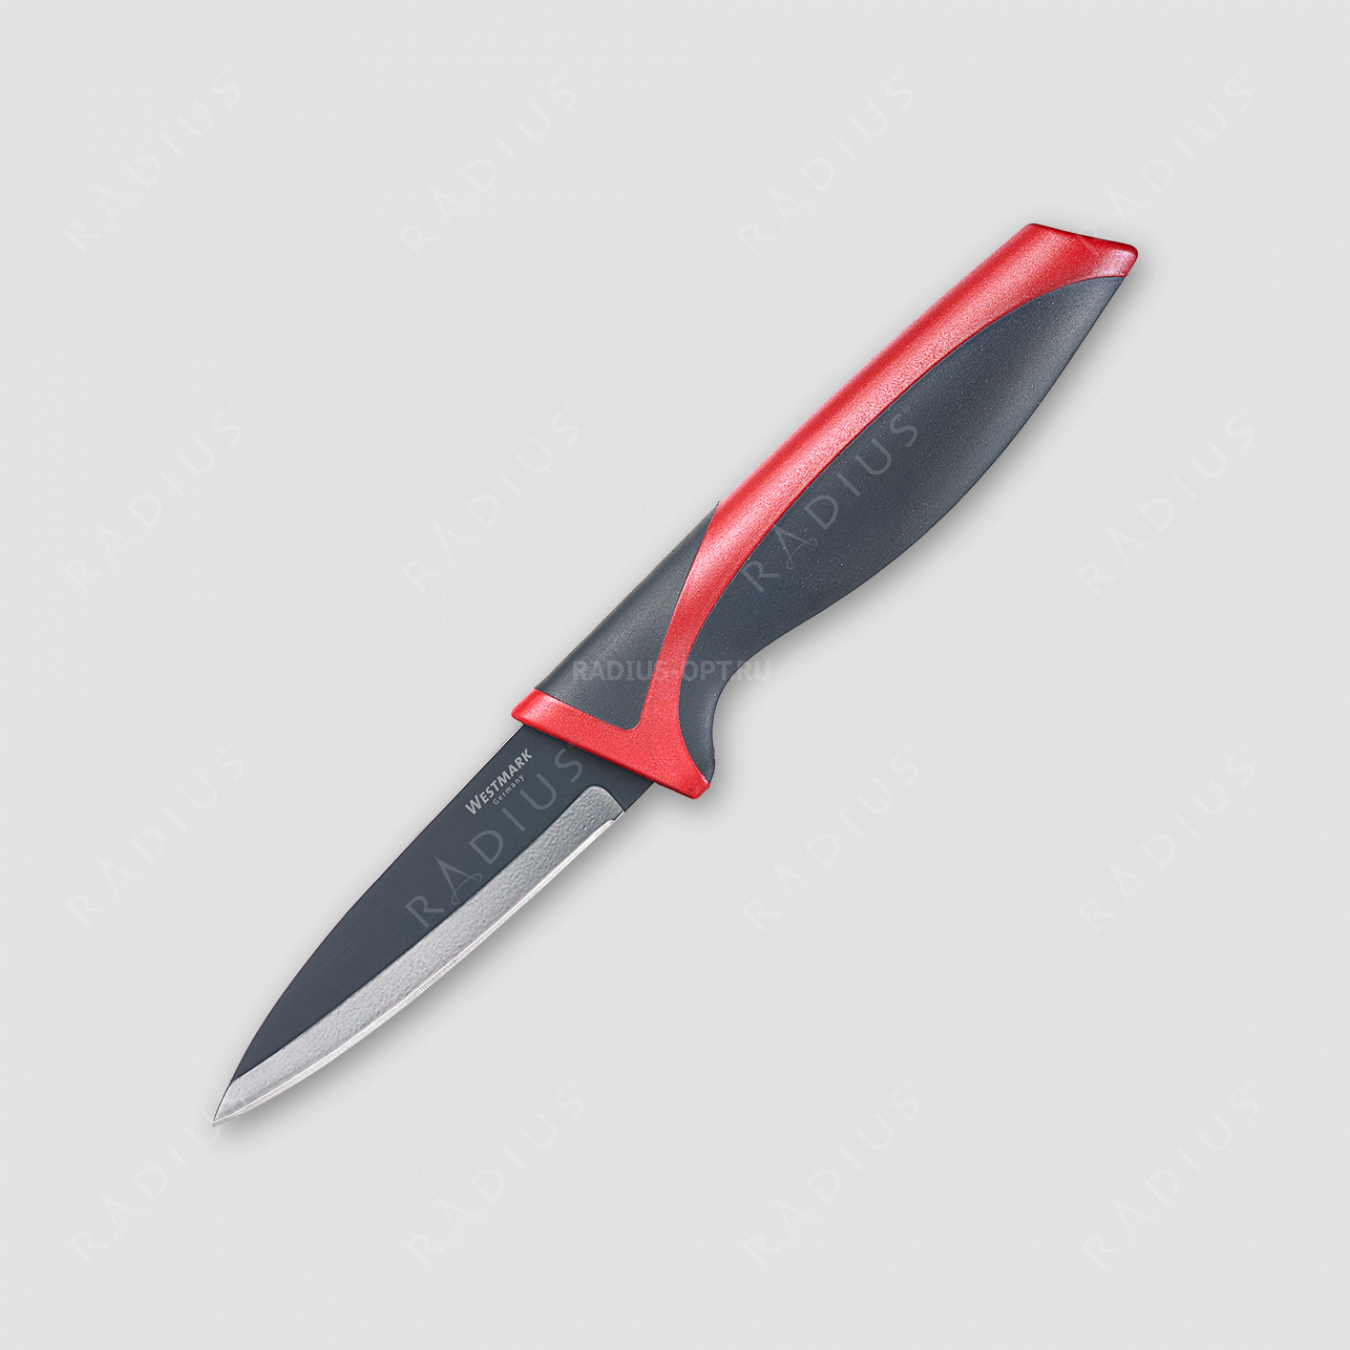 Нож кухонный для чистки 8 см, карточка, Westmark, Германия